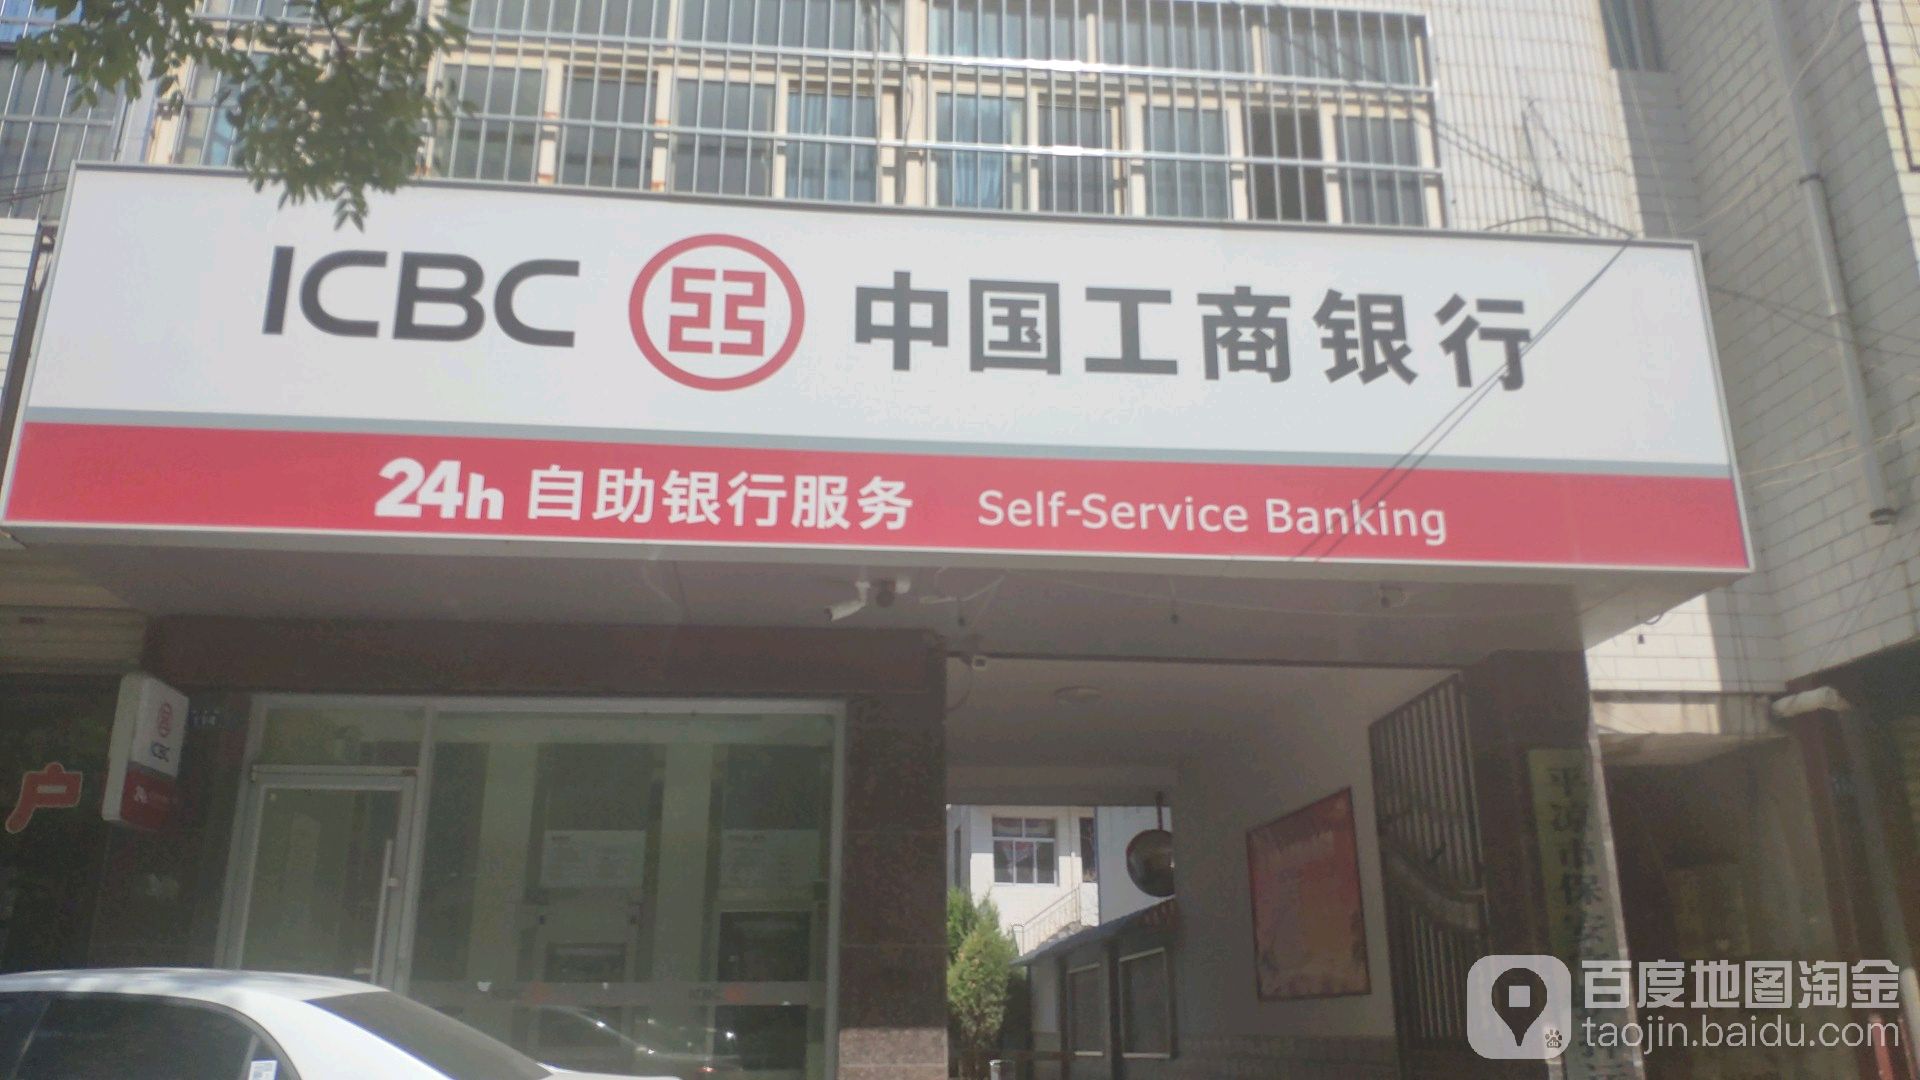 中國工商銀行24小時自助銀行(解放路店)